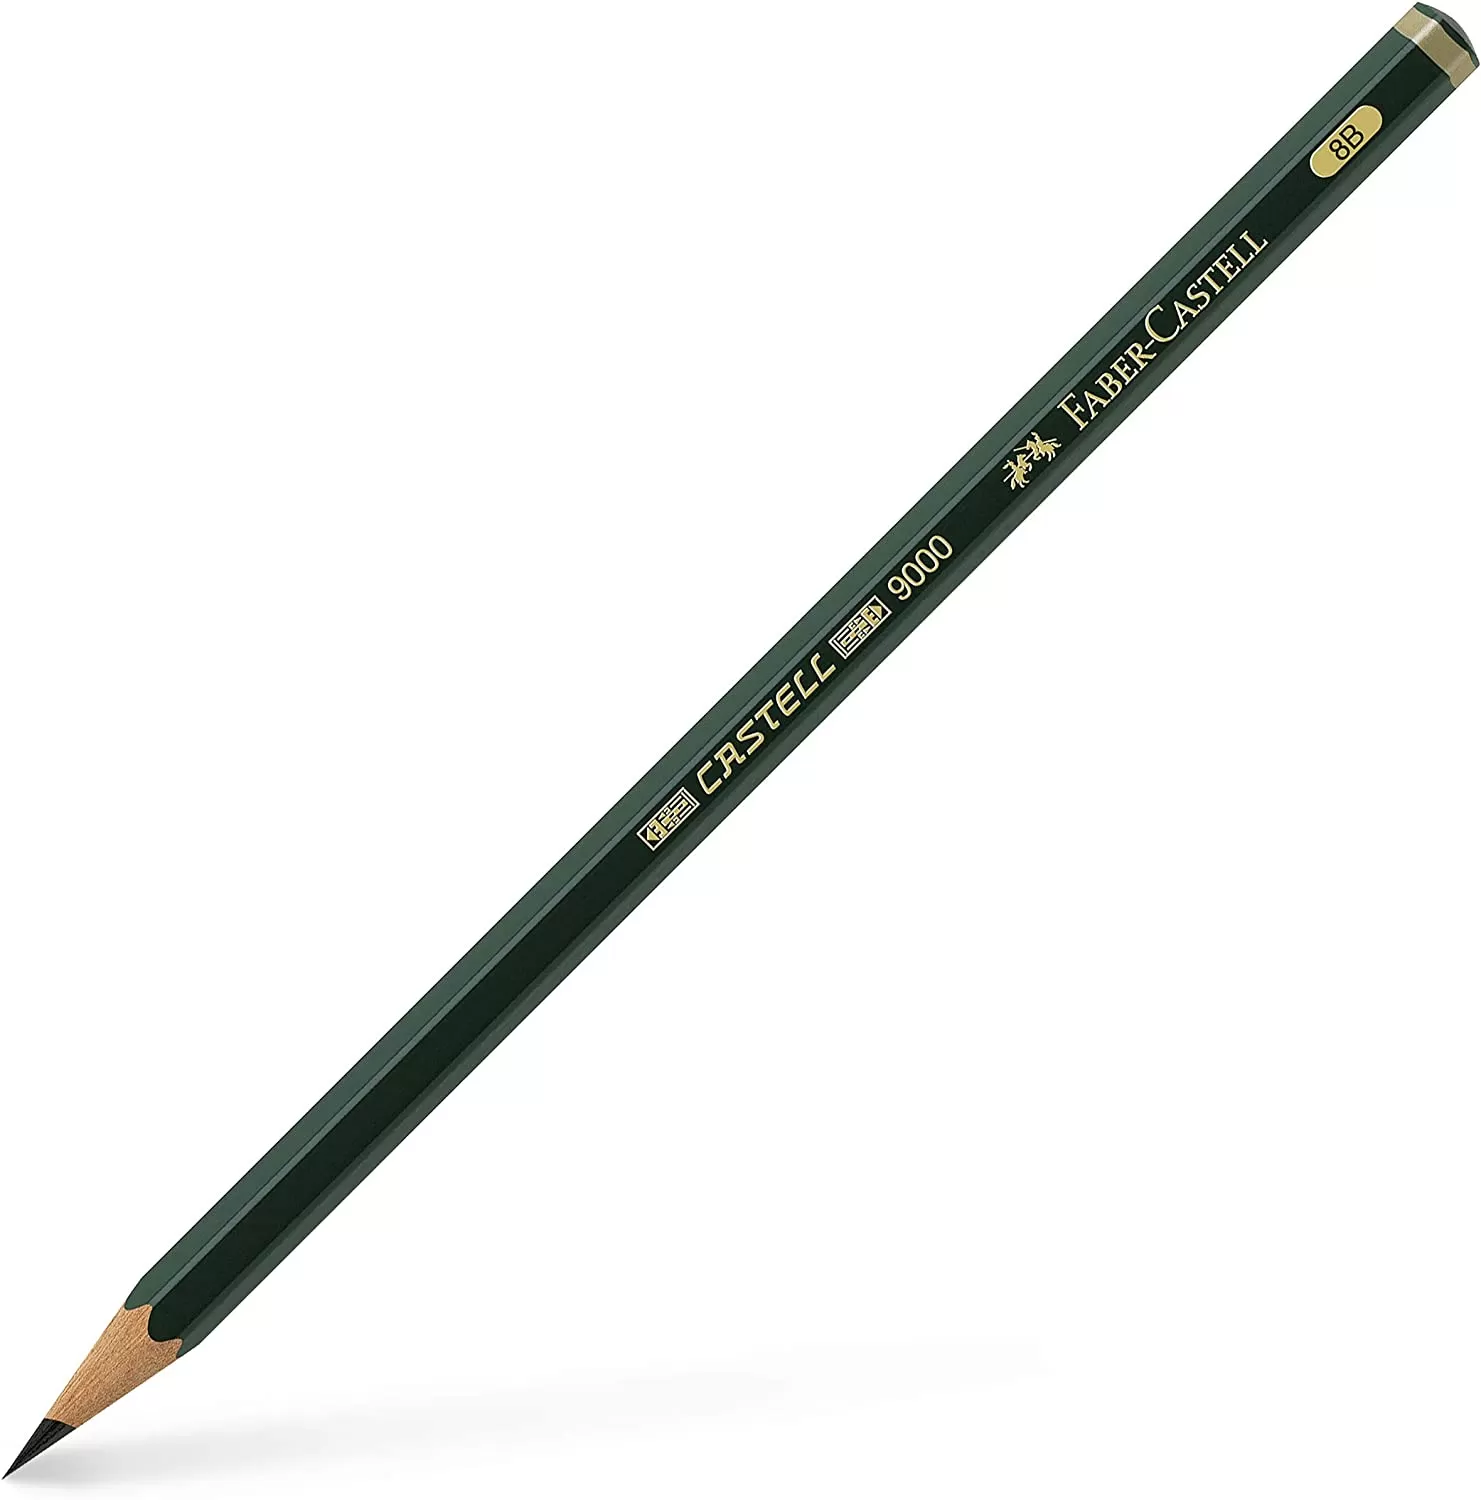 ست 12 عددی مداد طراحی فابرکاستل مدل Castell 9000 graphite pencil, Art Set, tin of 12